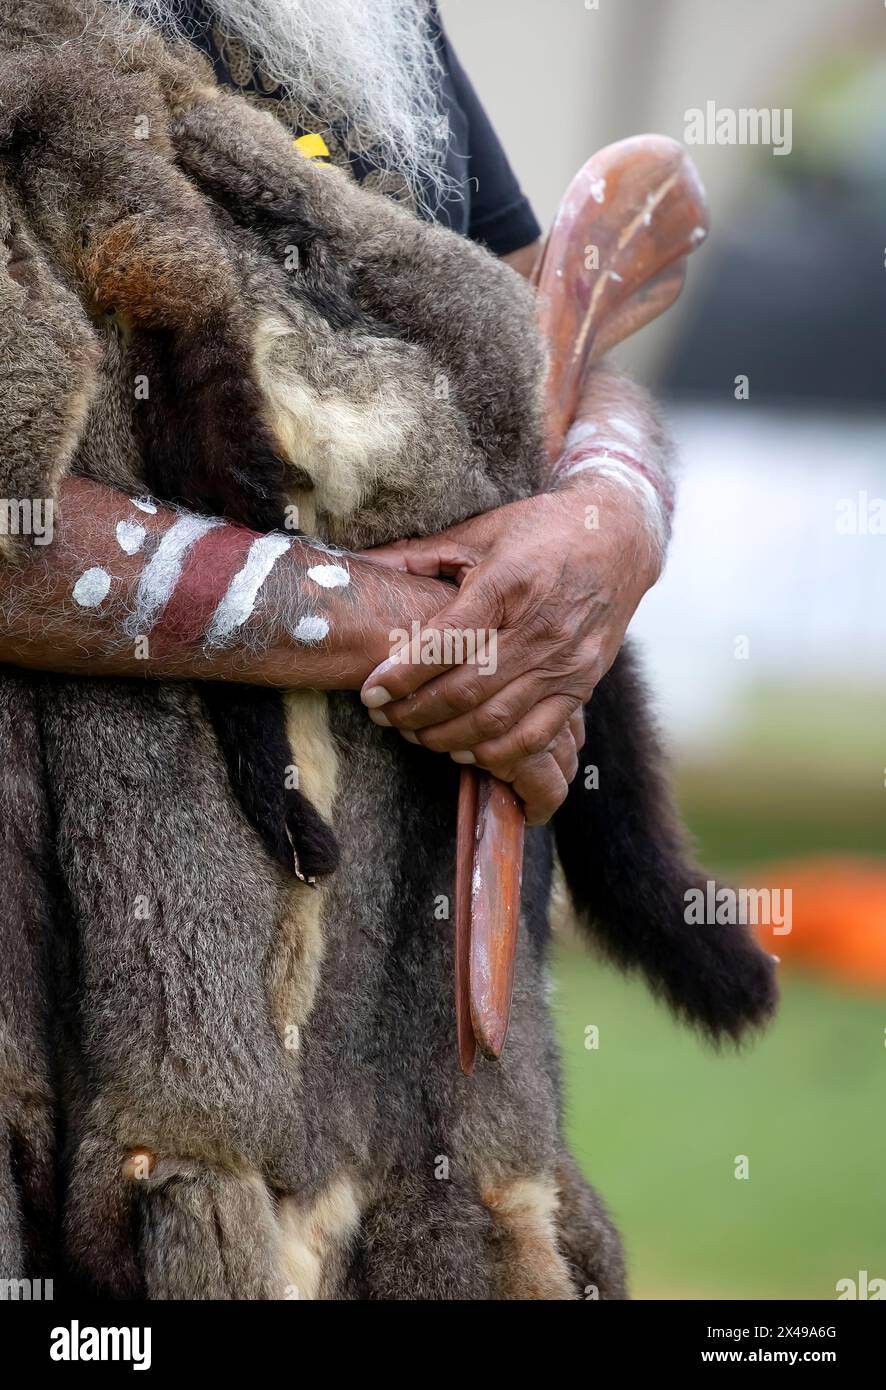 La mano umana tiene i bastoncini rituali per il rituale di benvenuto in un evento della comunità indigena in Australia Foto Stock